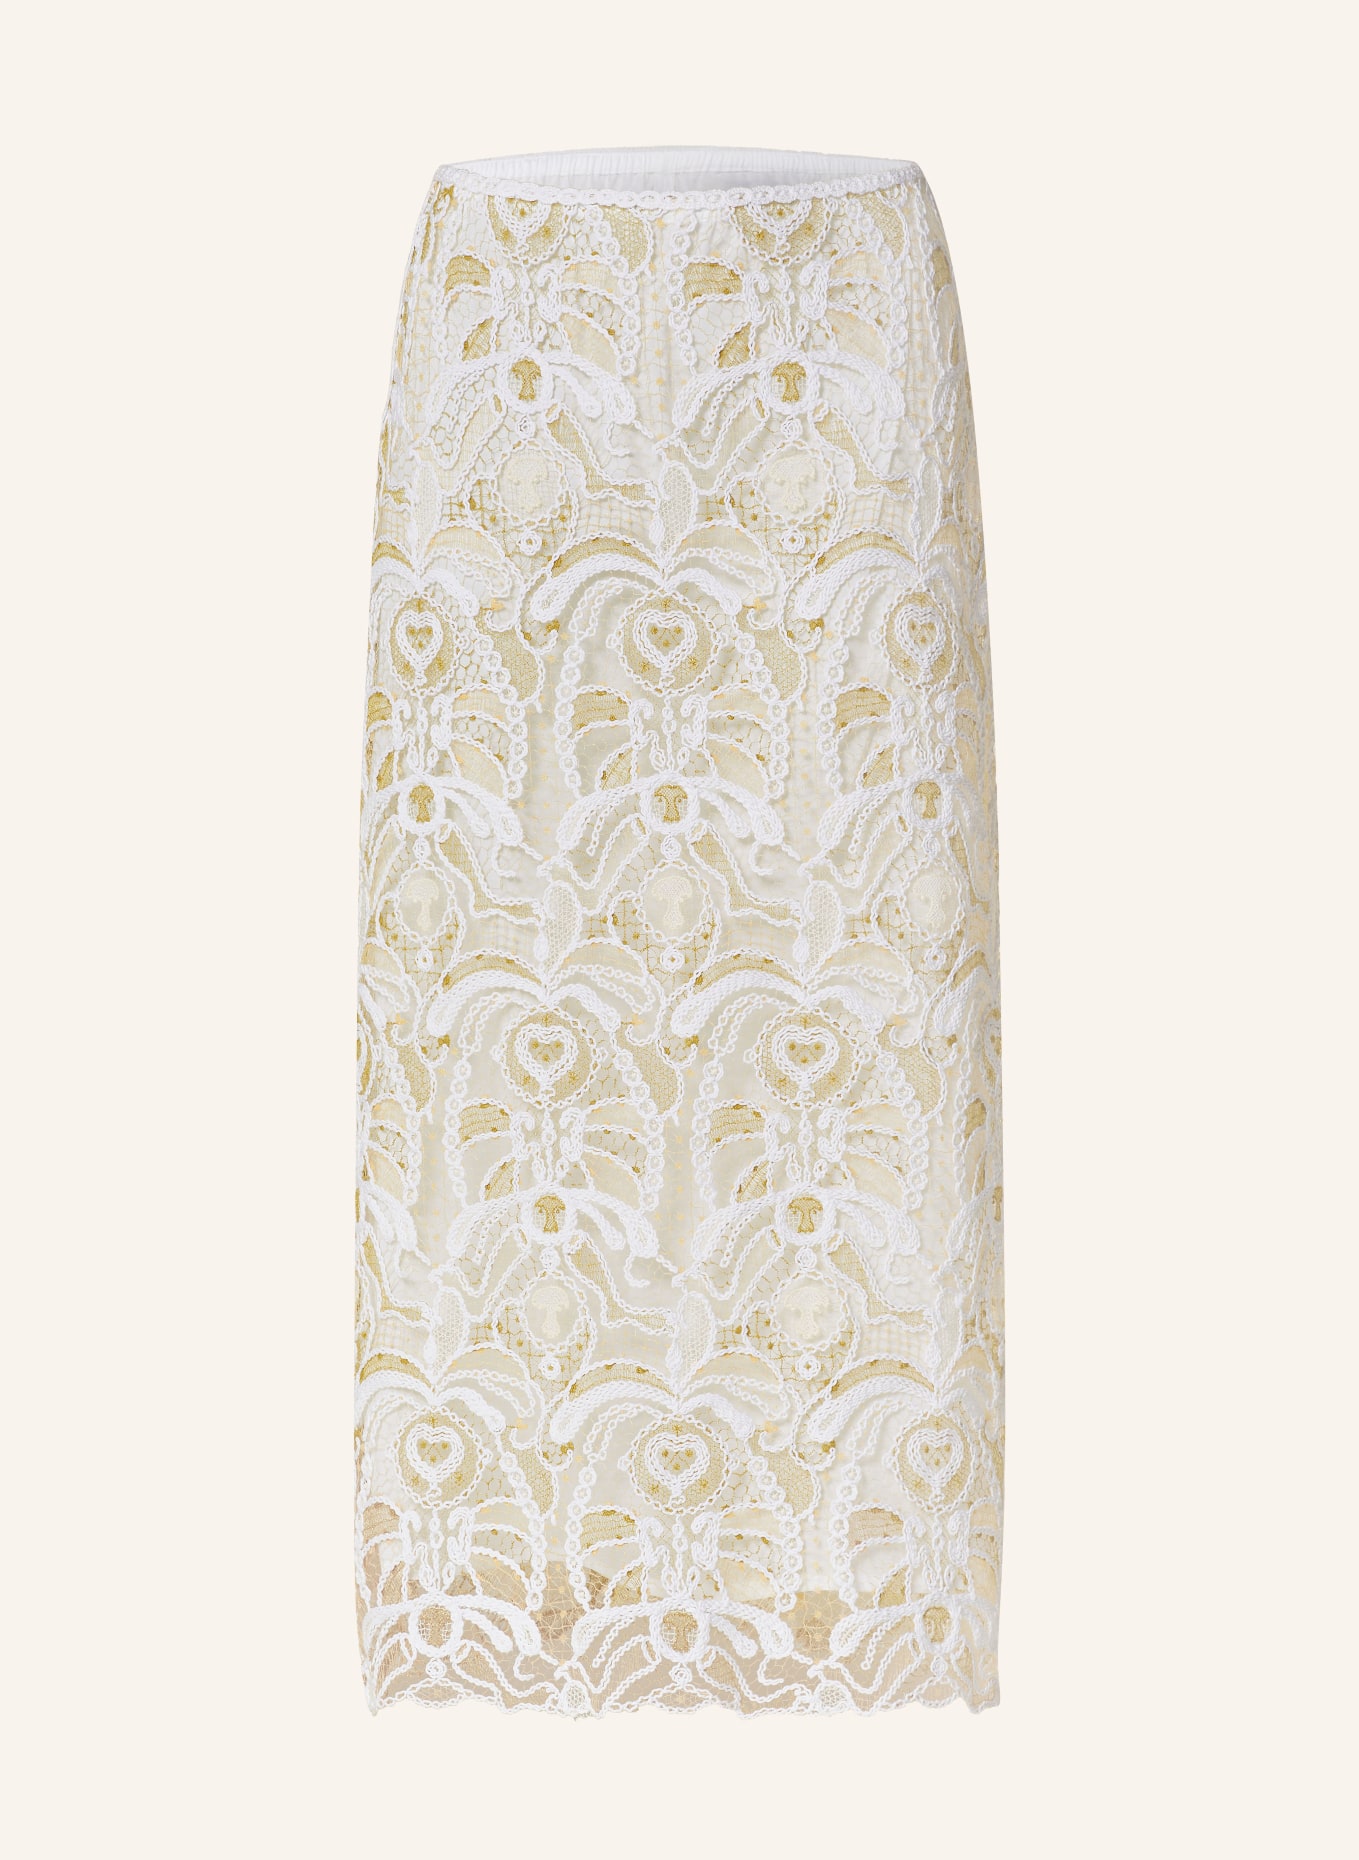 FABIANA FILIPPI Lace skirt, Color: WHITE/ OLIVE/ LIGHT YELLOW (Image 1)